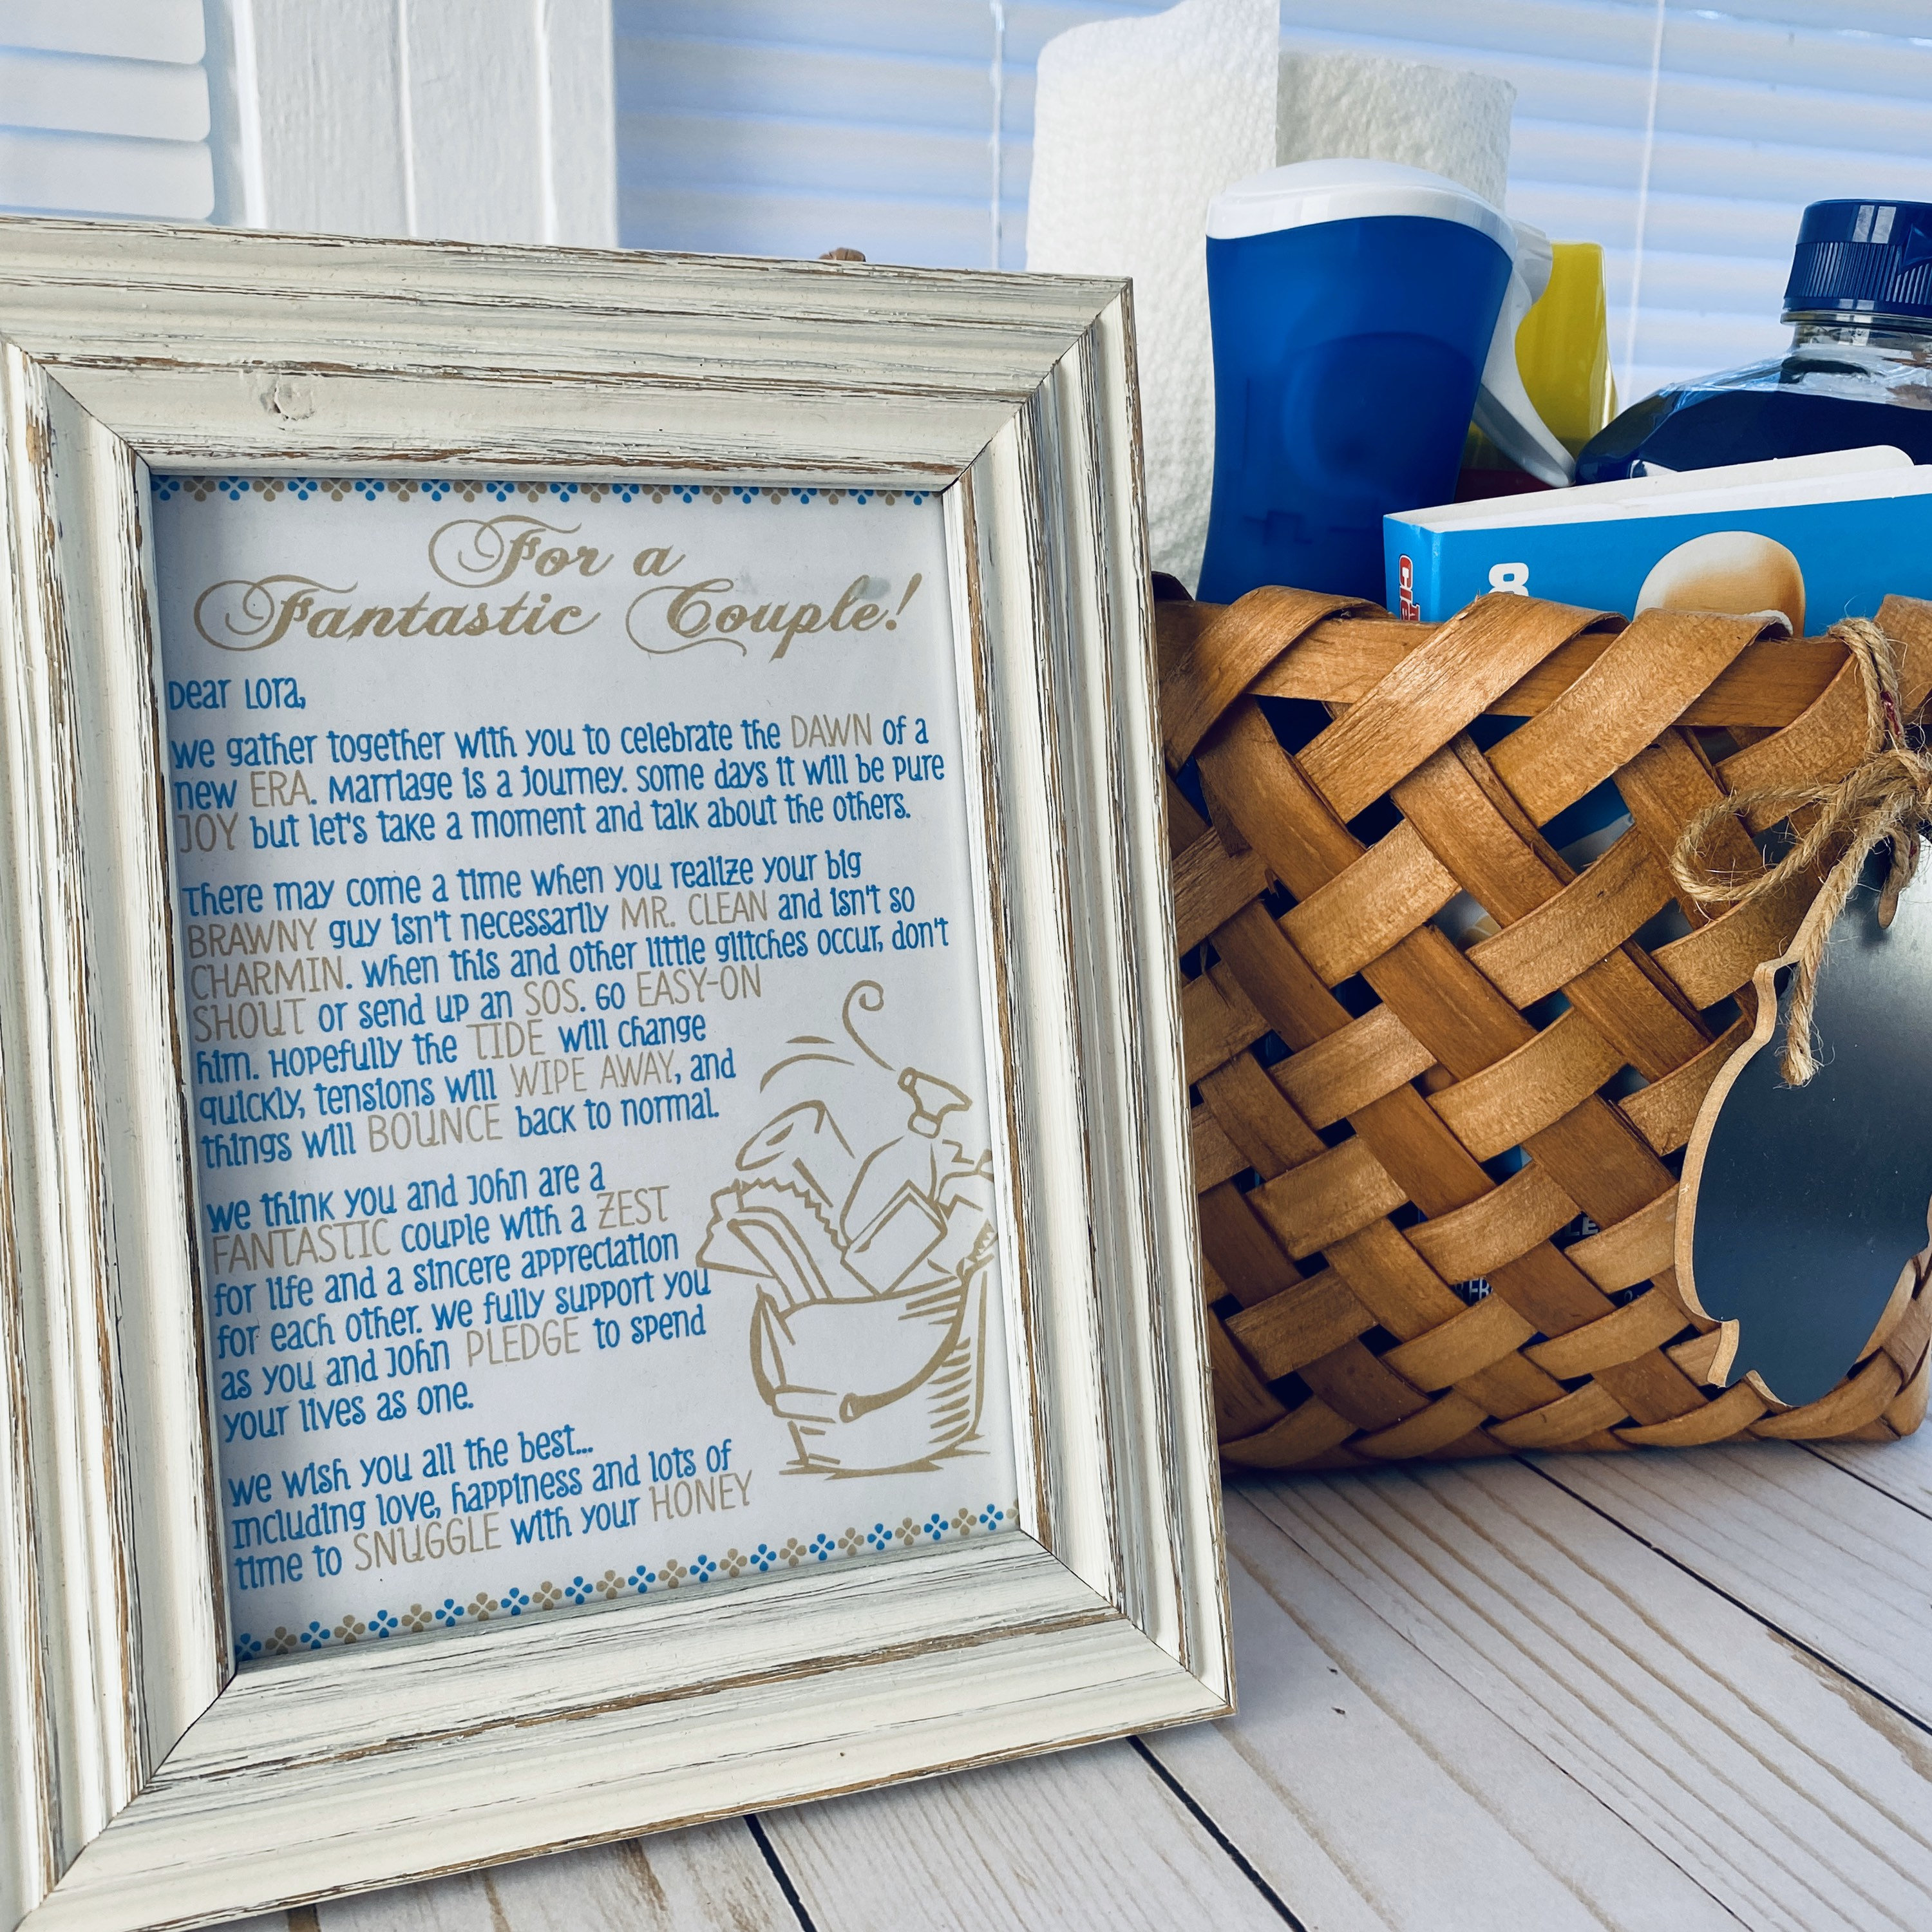 bridal shower gift idea - pancake breakfast gift basket - Bellewood Cottage